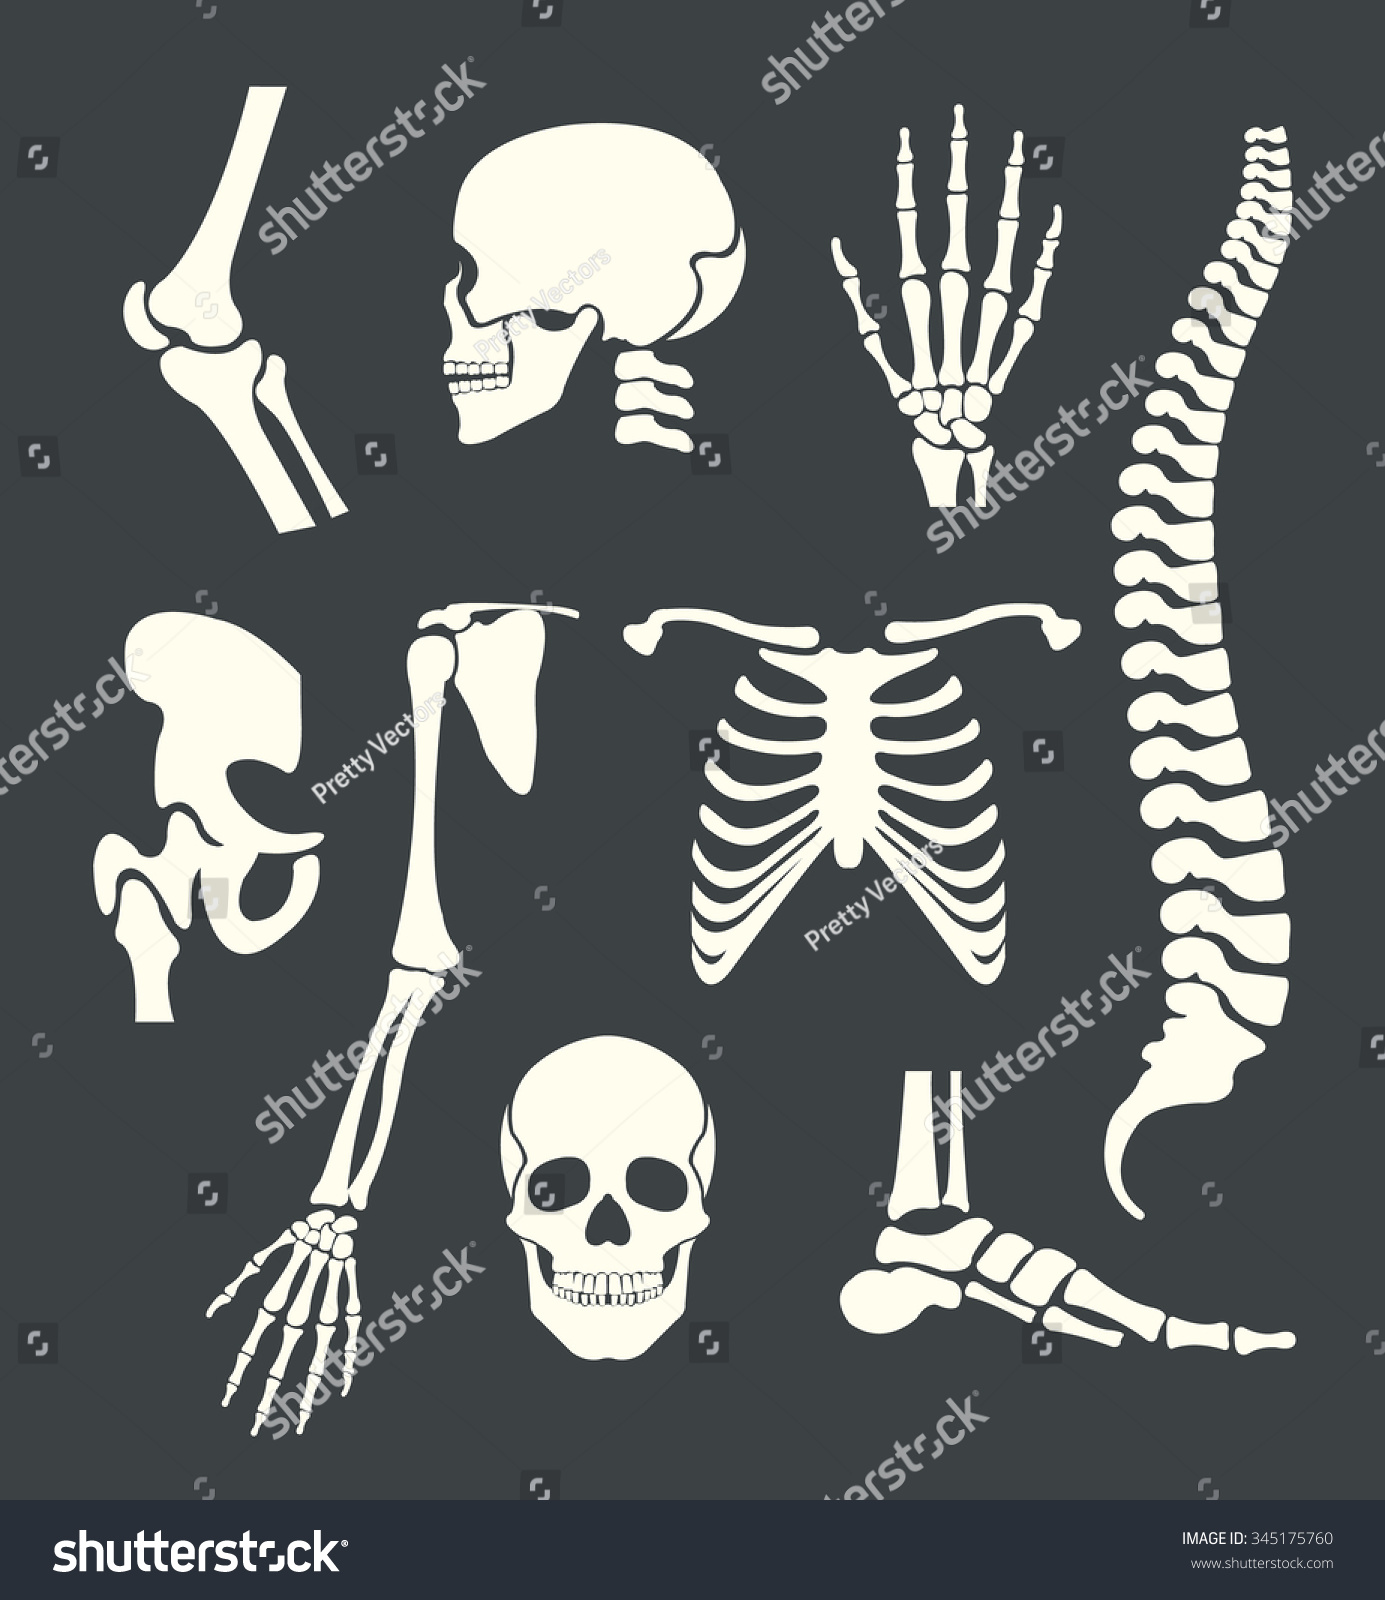 stock-vector-human-skeleton-vector-white-illustration-set-345175760.jpg